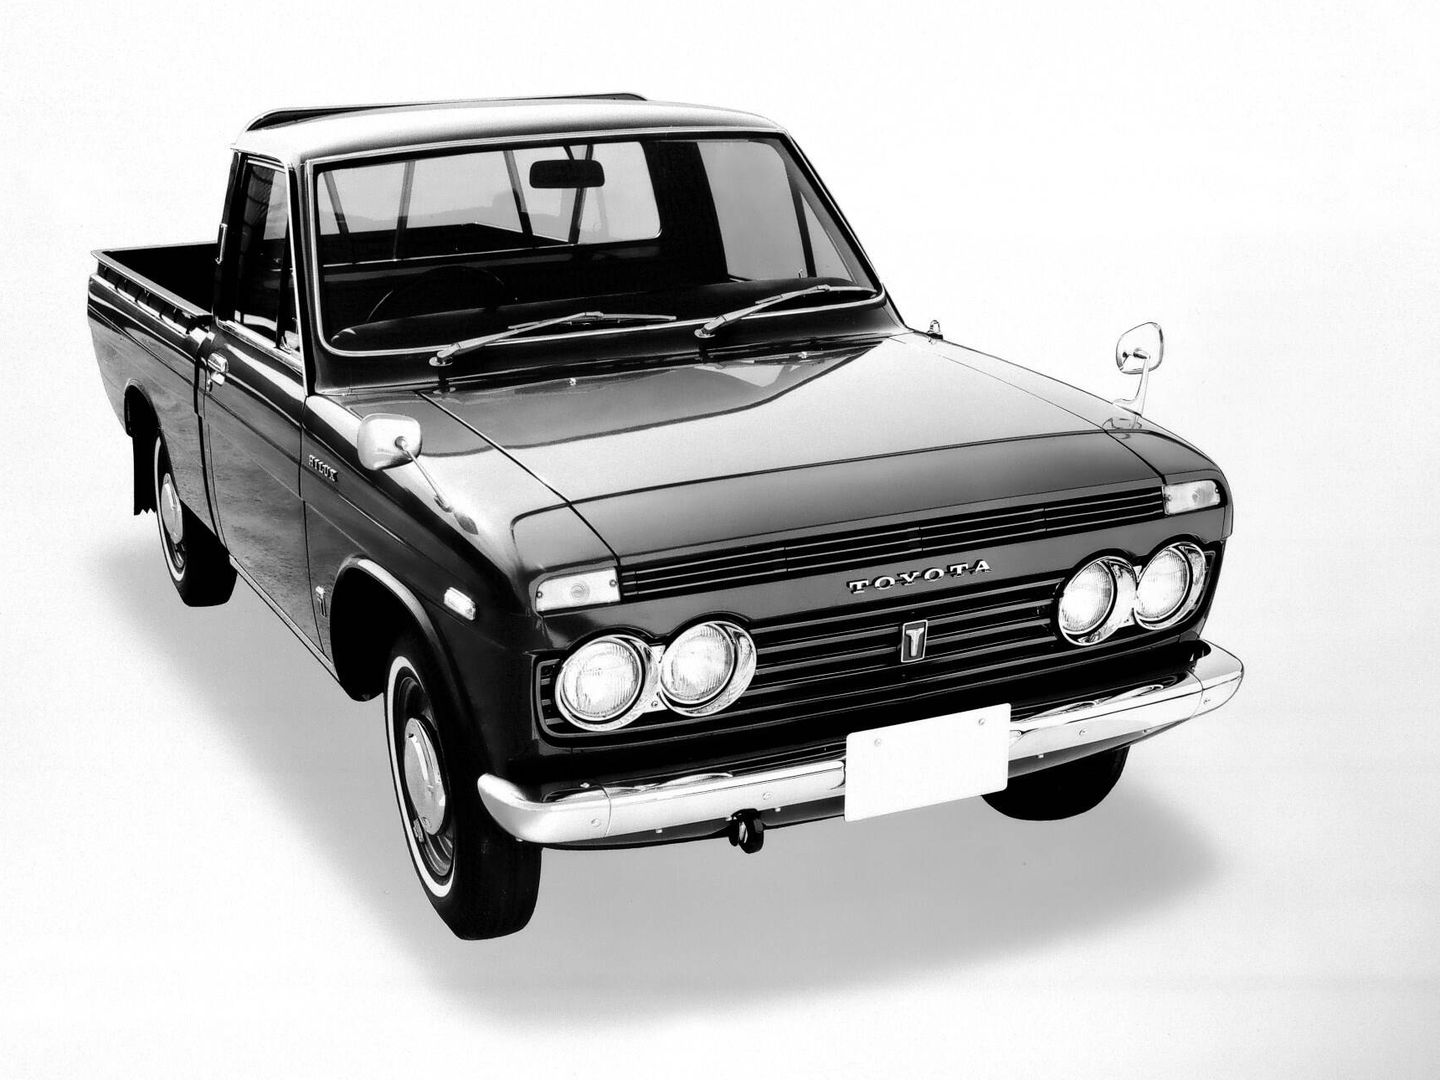 El primer Hilux, presentado en 1968, era mucho más compacto.